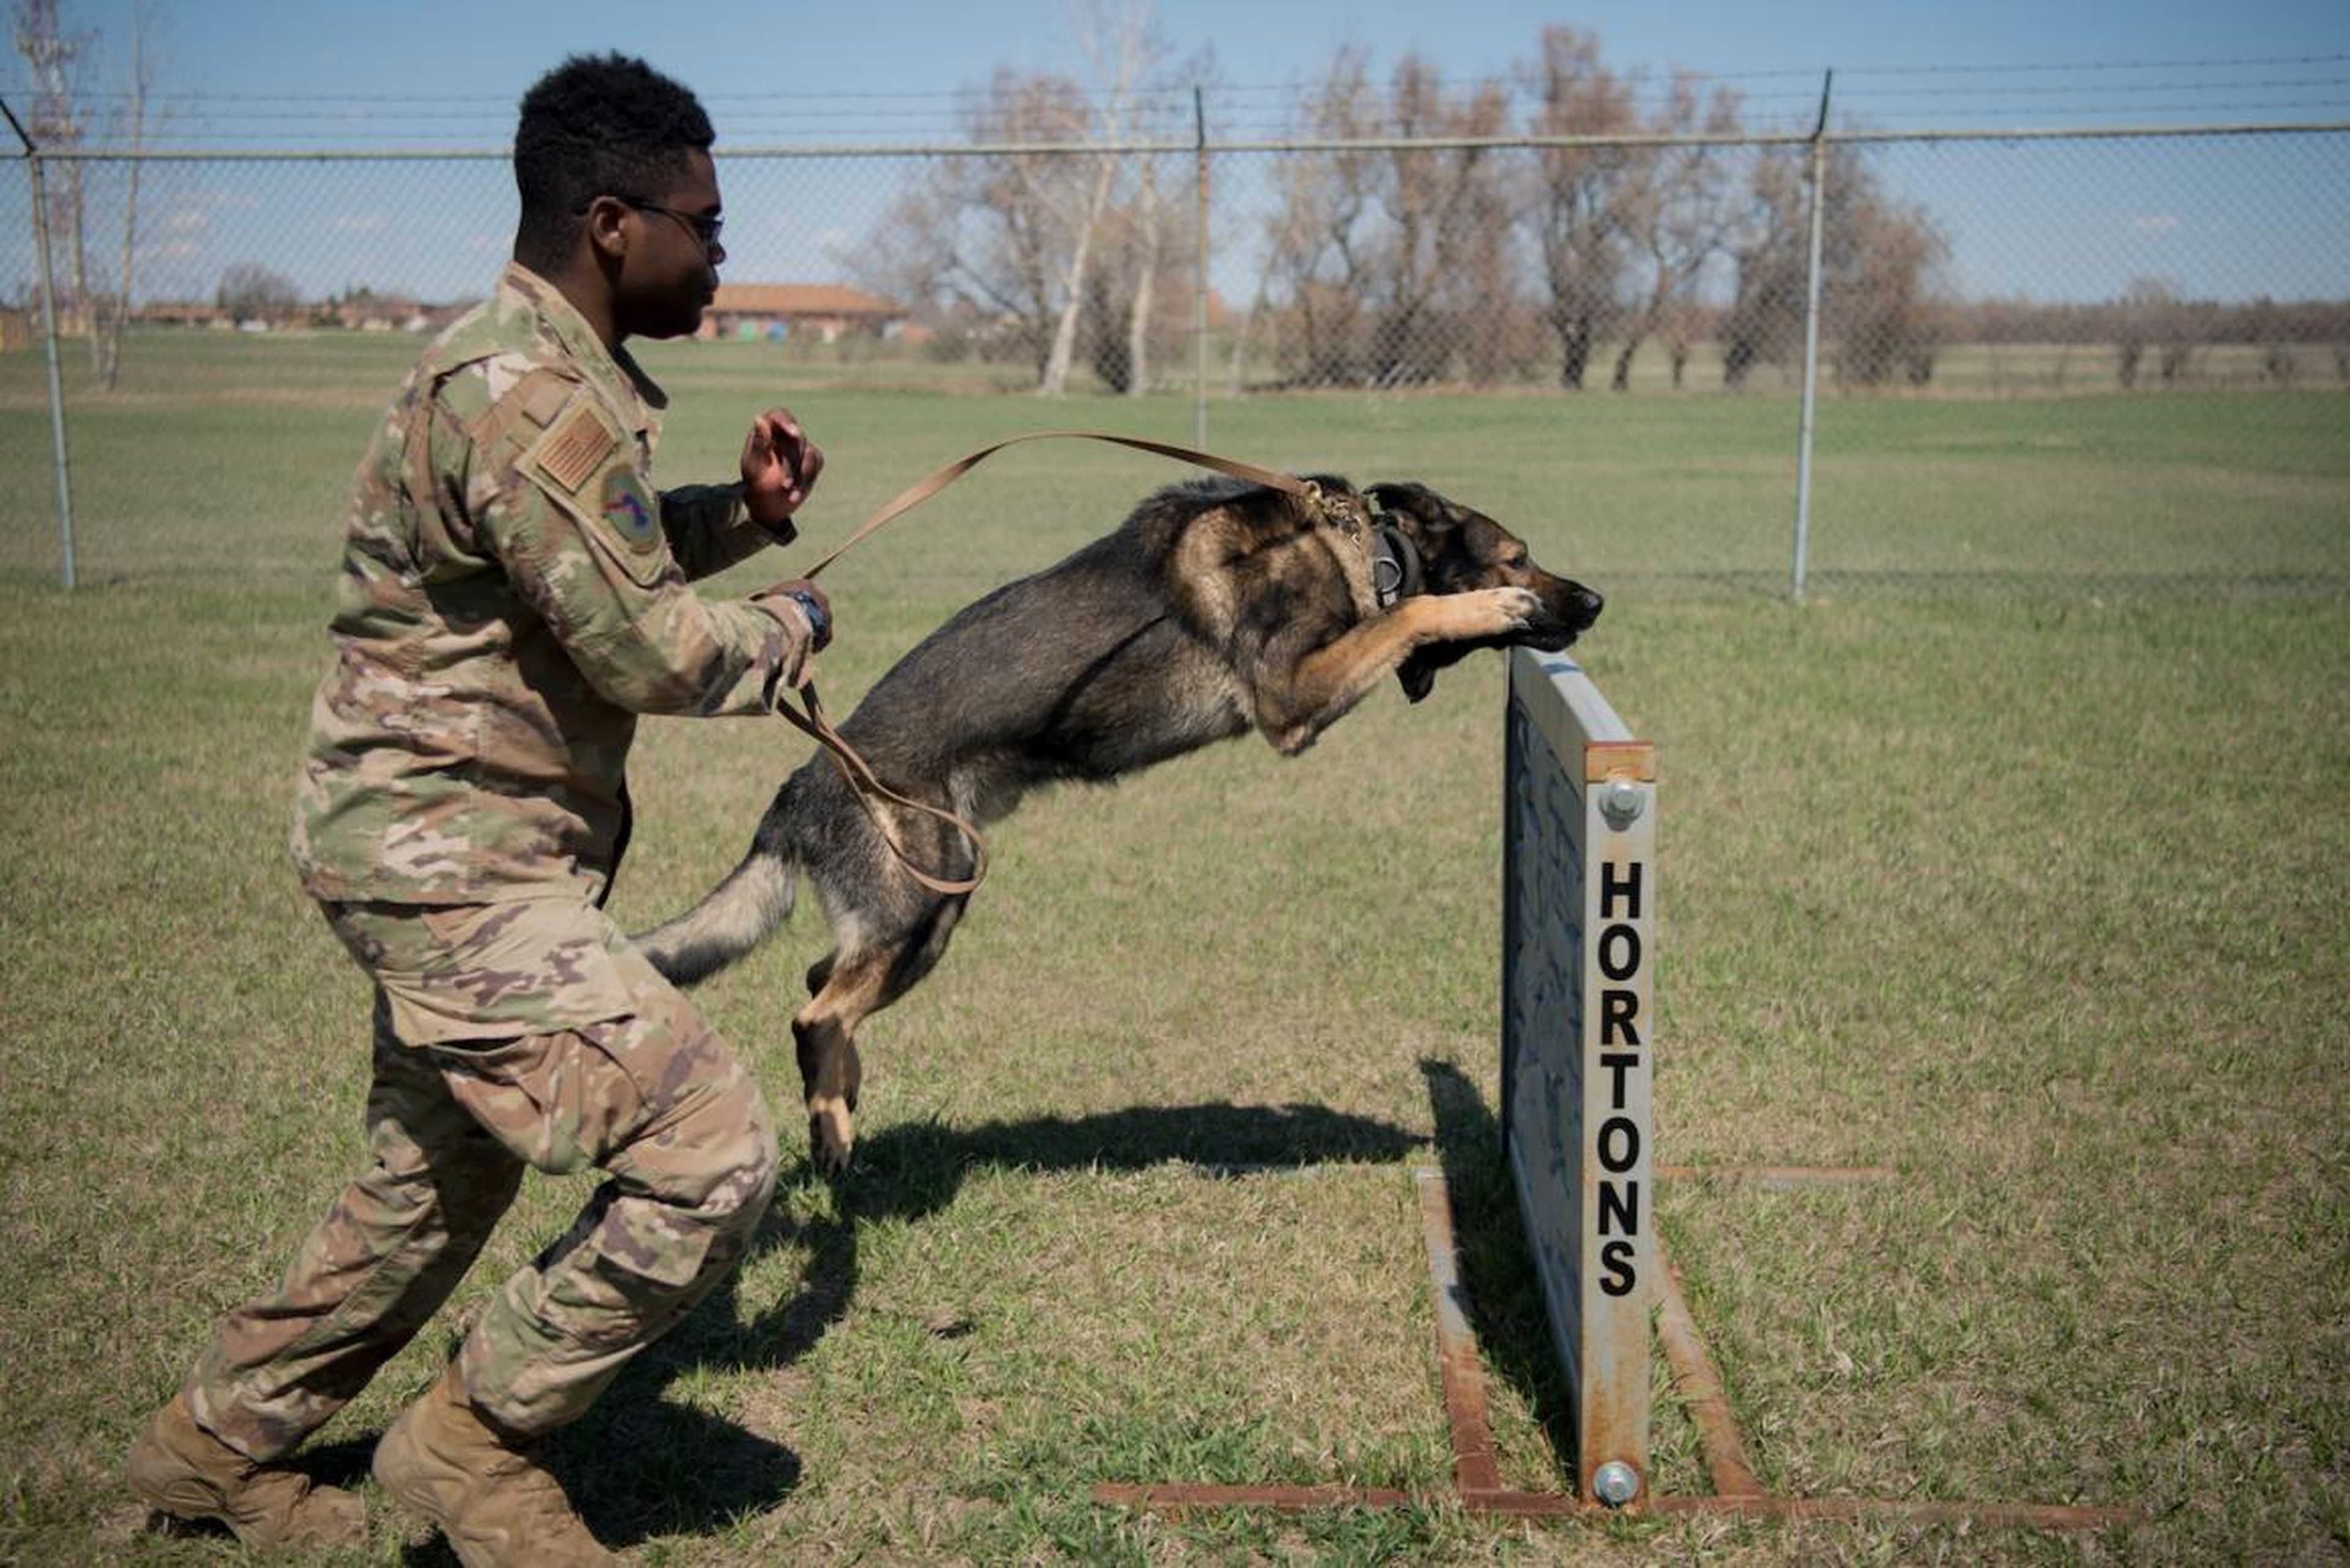 John Fountain, piloto de primera clase, un adiestrador de perros, con Deny en la carrera de Obstáculos de Obediencia en la base aérea de Minot, Dakota del Norte, 24 de abril de 2019